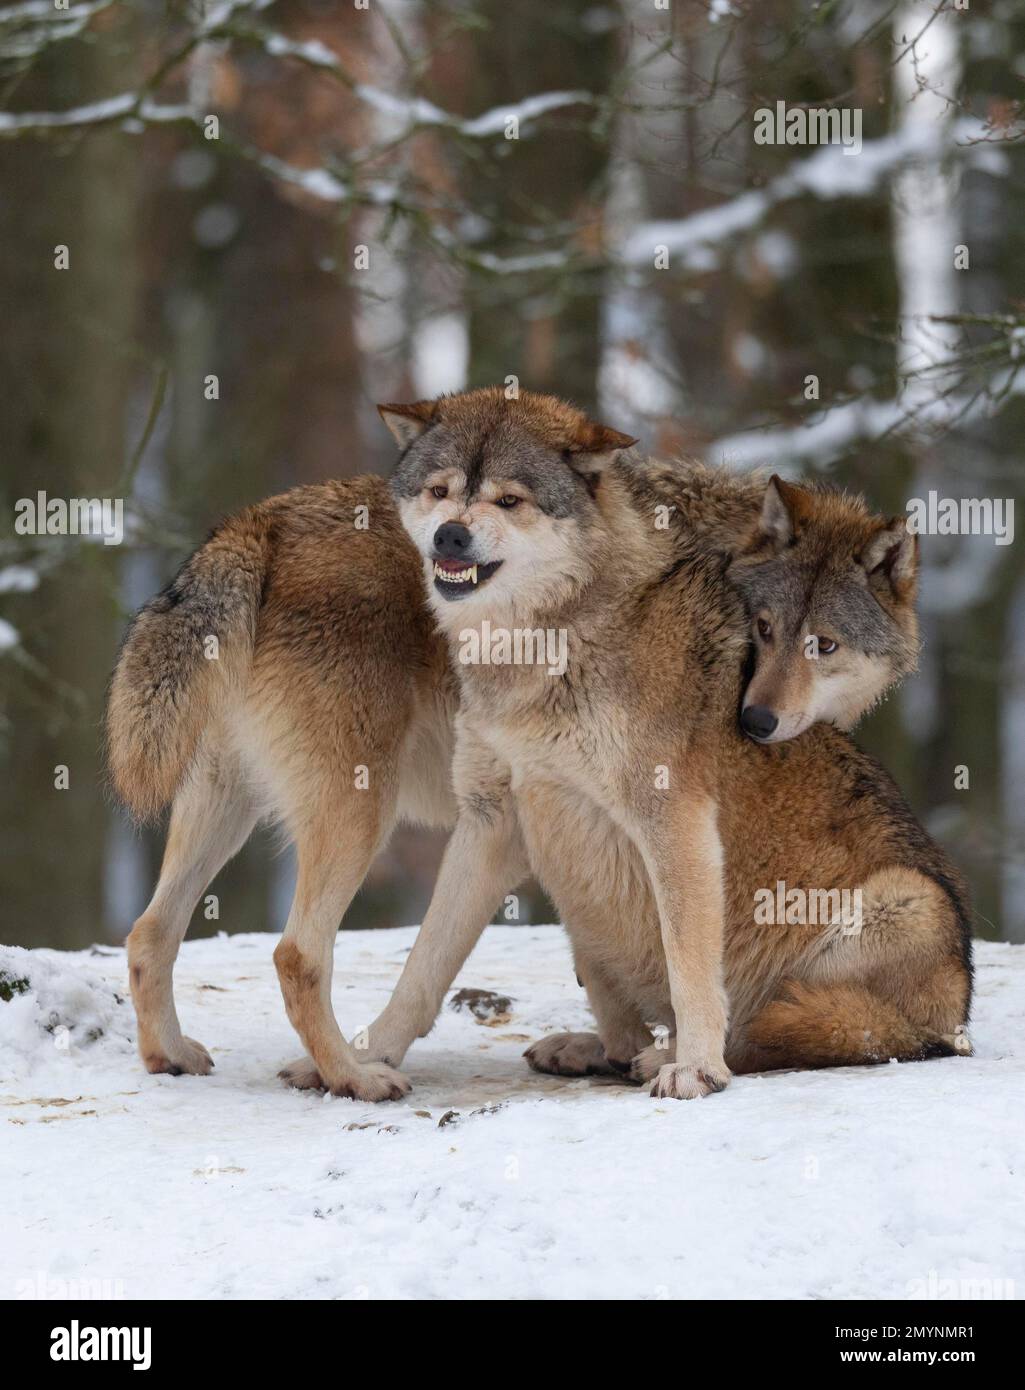 Loups algonquines (Canis lupus lycaon) dans la neige, comportement social, captif, Allemagne, Europe Banque D'Images